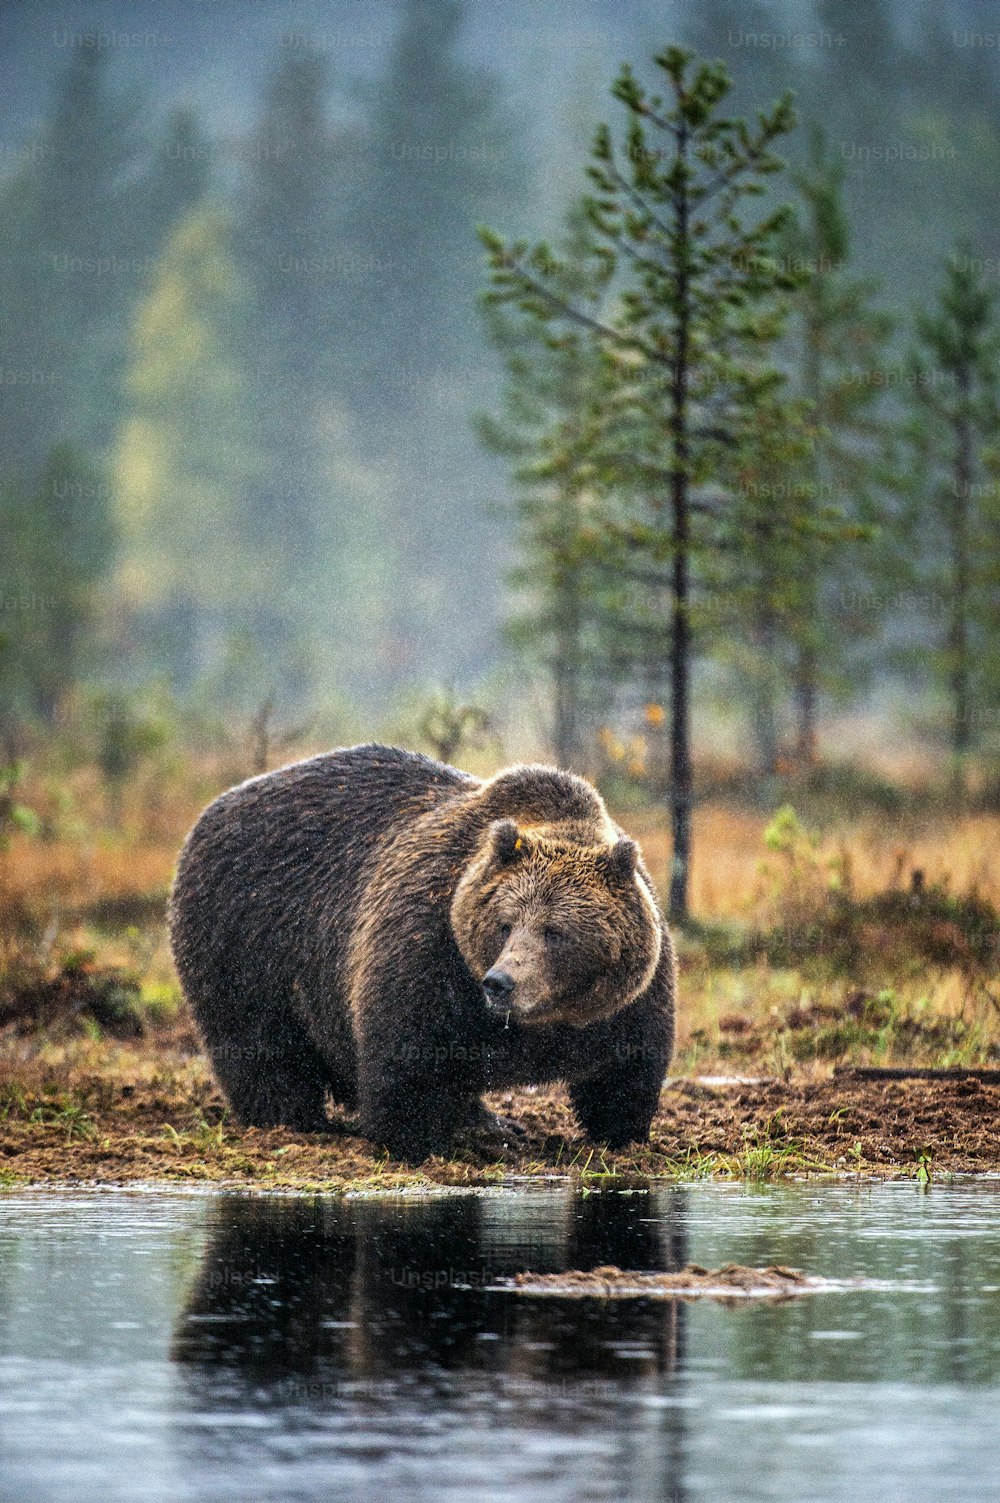 Un ours brun sur la tourbière dans la forêt d’automne. Adulte Gros ours brun mâle. Nom scientifique : Ursus arctos. Habitat naturel, saison d’automne.